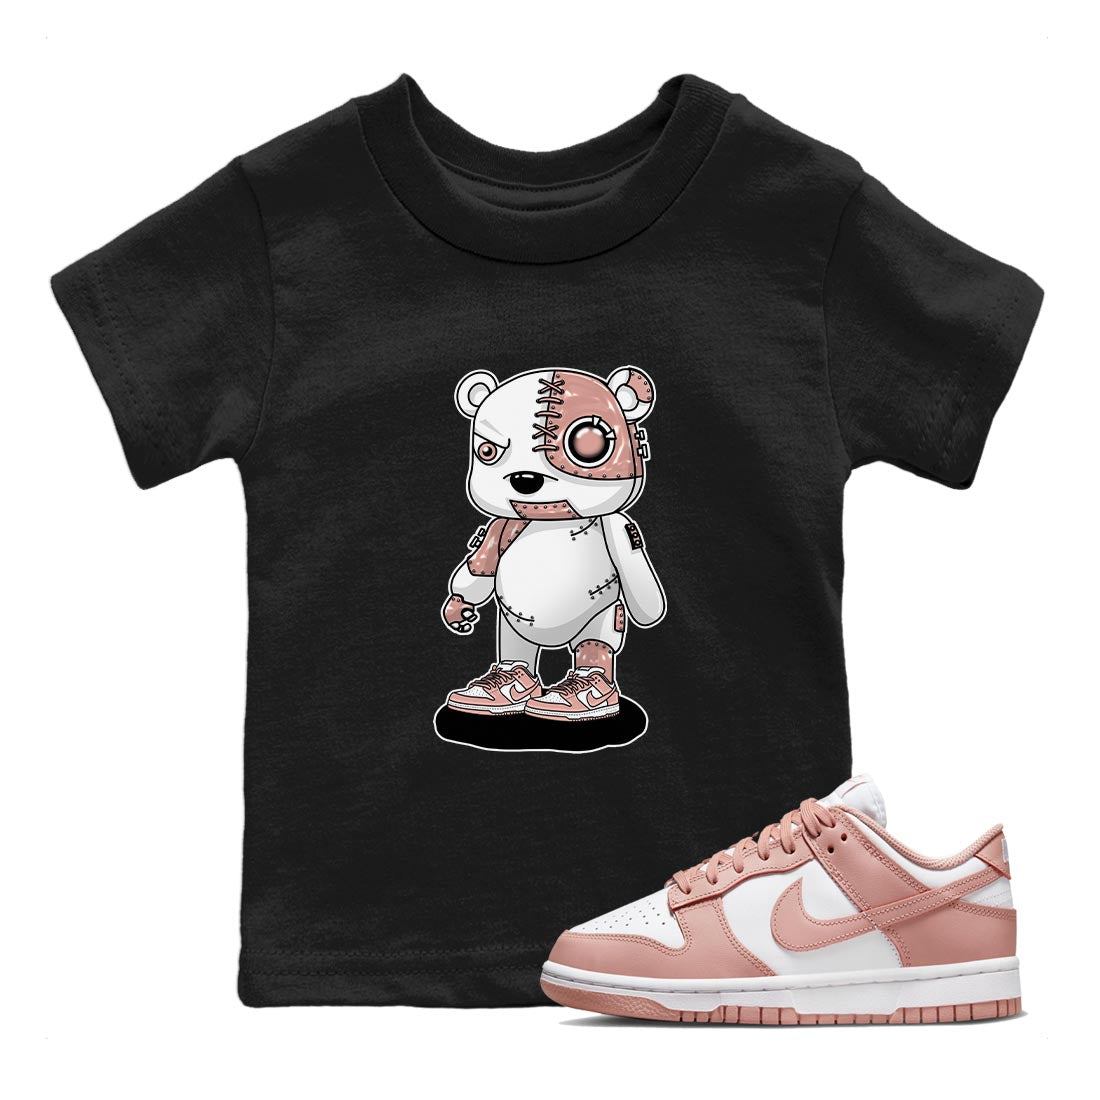 Nike Dunks Low Rose Whisper shirt to match jordans Cyborg Bear Streetwear Sneaker Shirt Nike Dunk Rose Whisper Drip Gear Zone Sneaker Matching Clothing Baby Toddler Black 1 T-Shirt